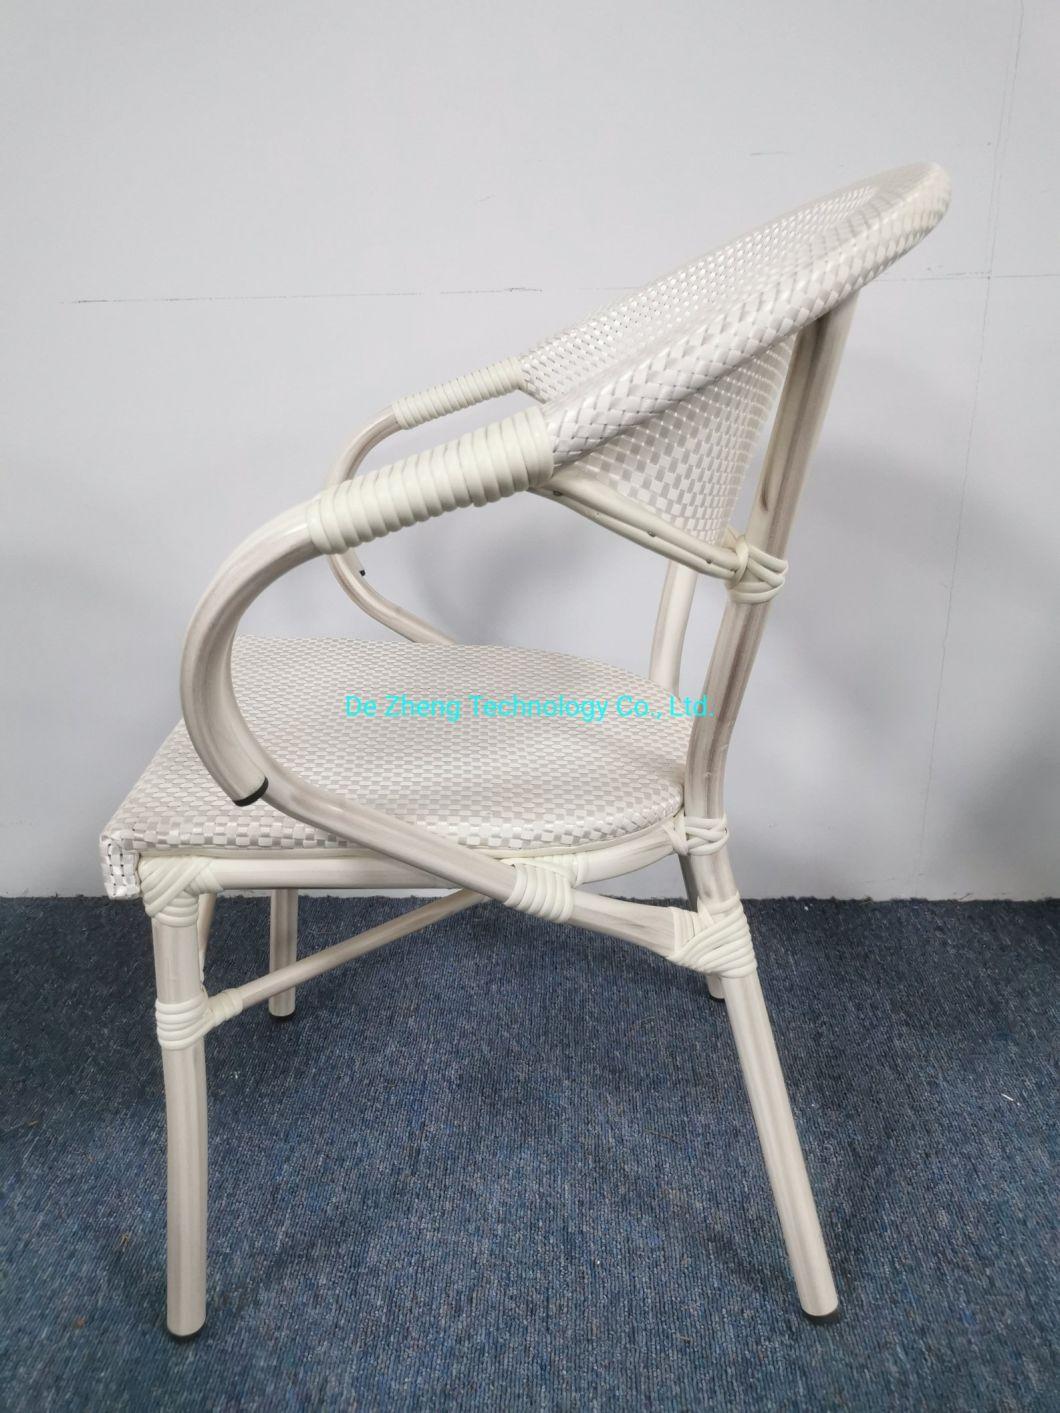 Modern Outdoor Handmade Furniture High Quality Stackable Rattan Textylene Mesh Chair Dining Set Garden Deck Chairs